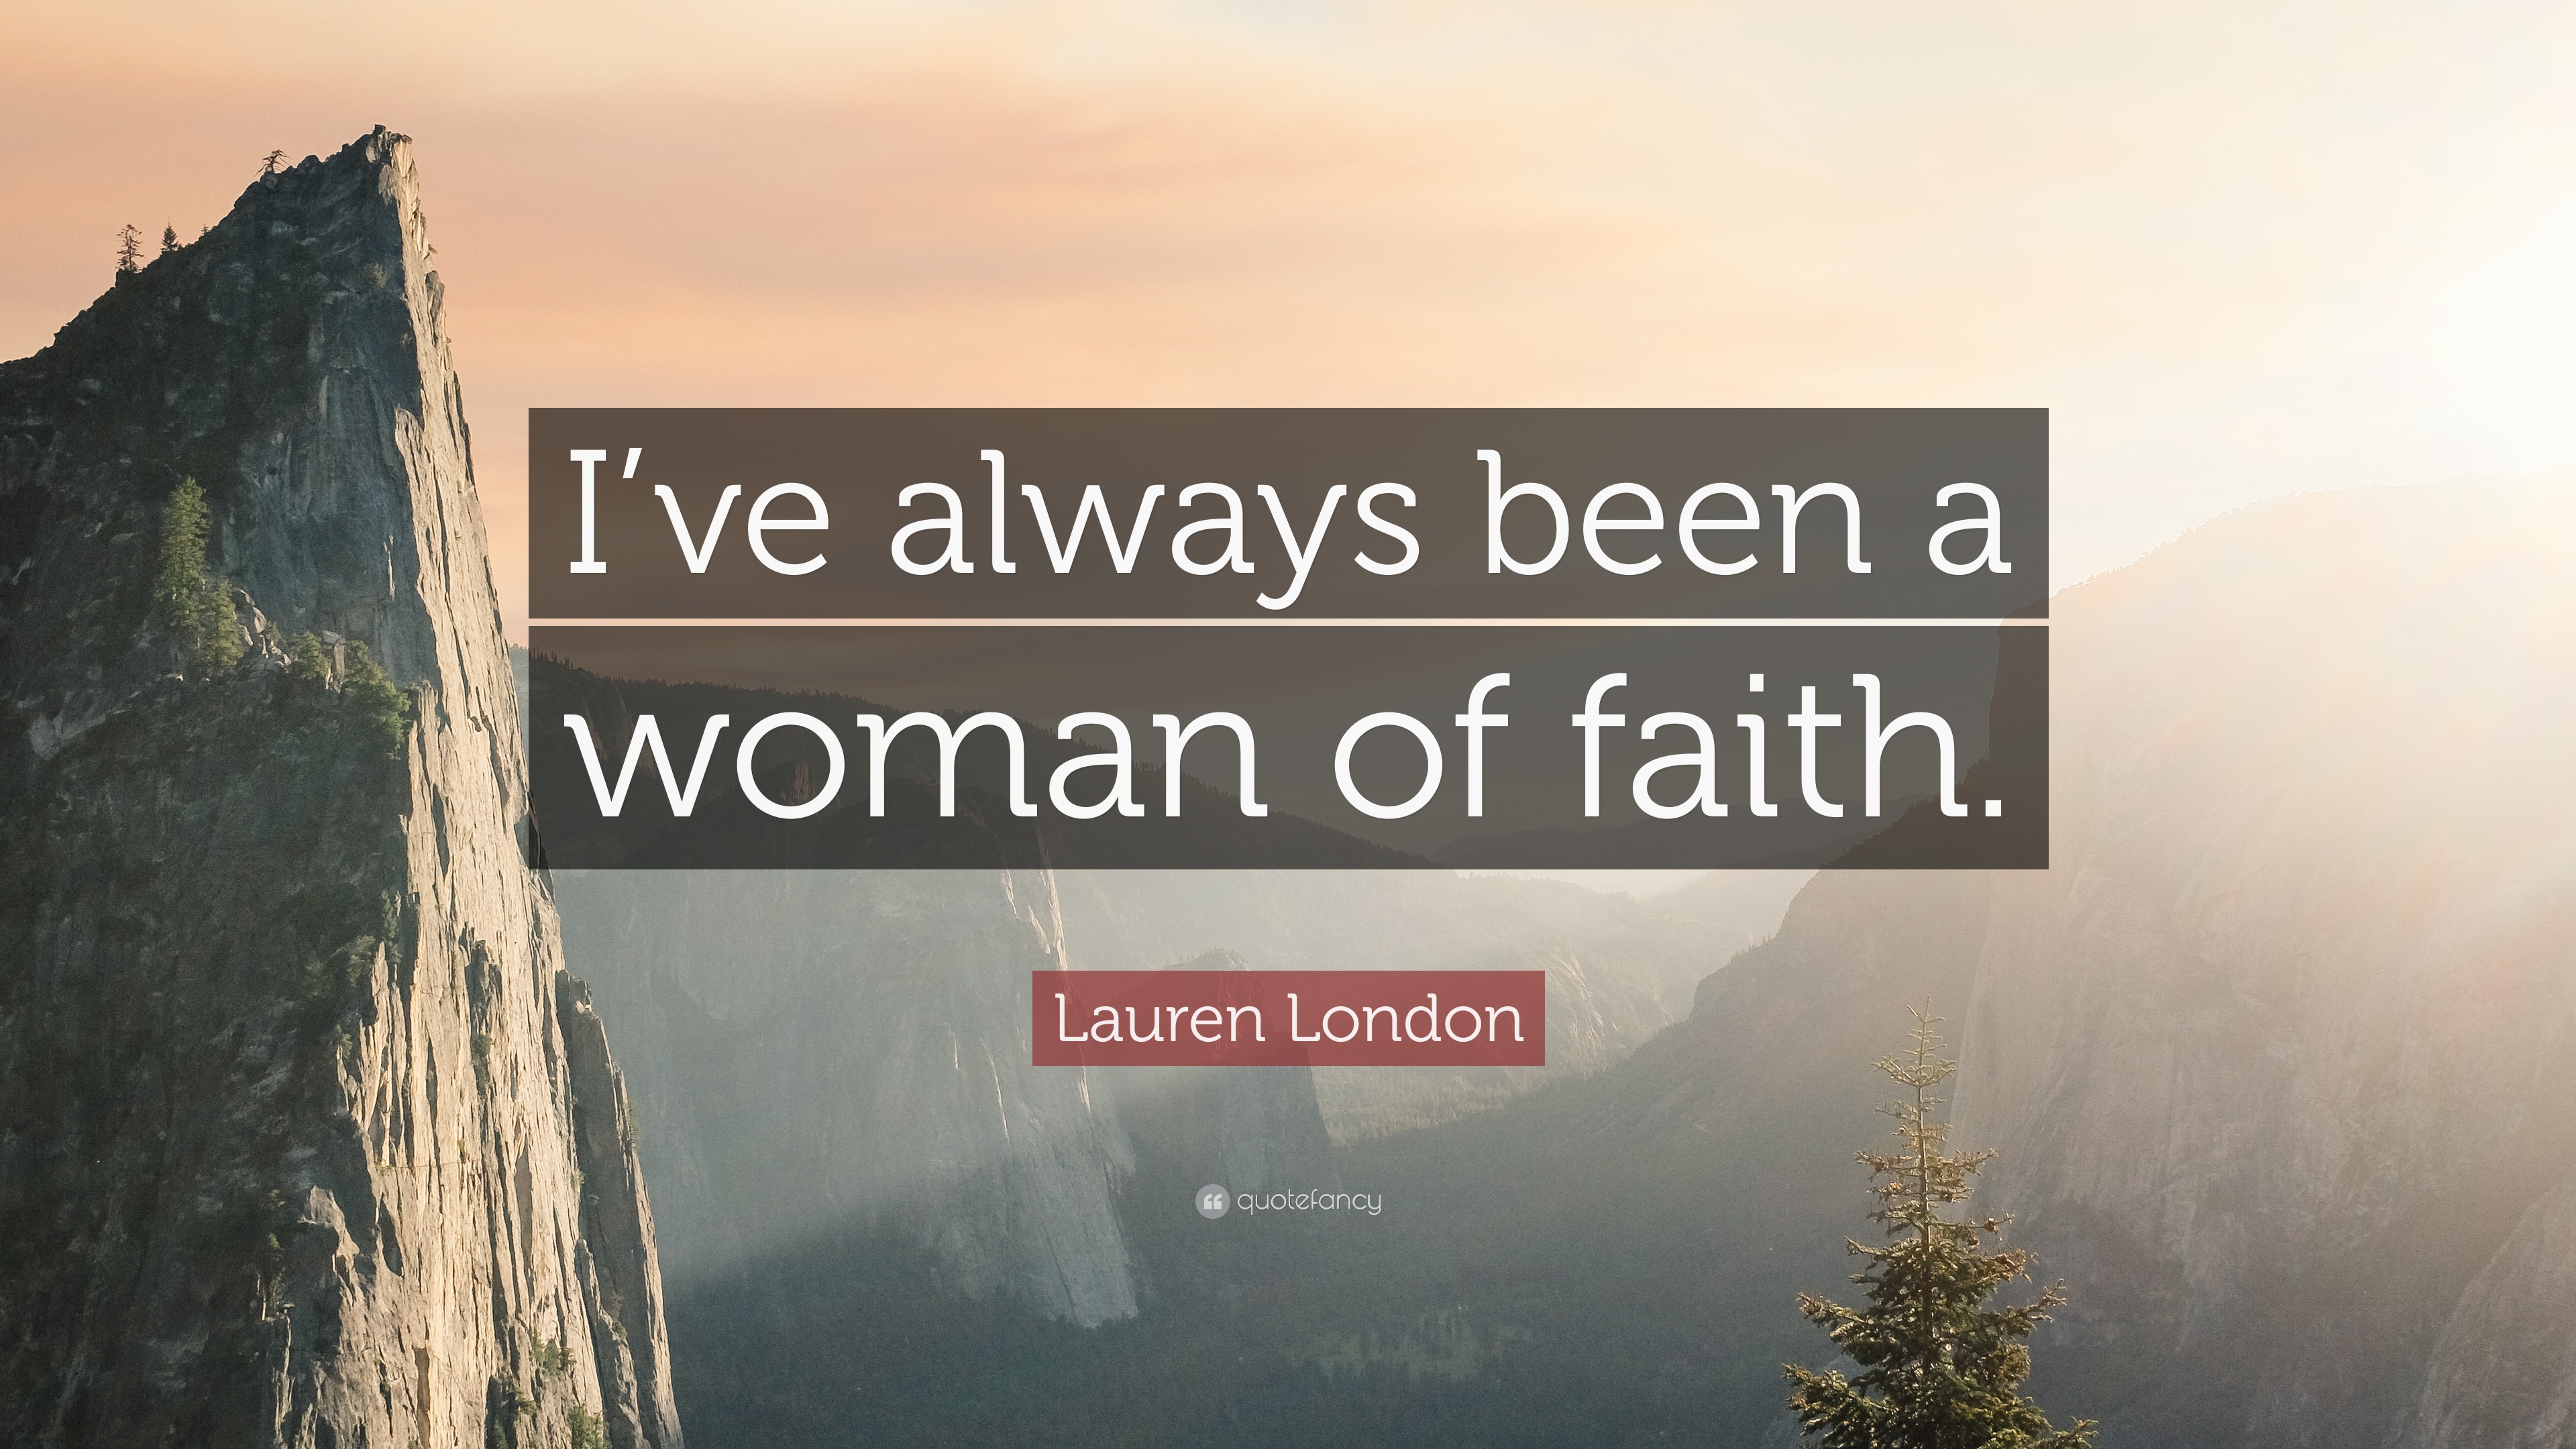 Lauren London Quote: “I've always been a woman of faith.” 7